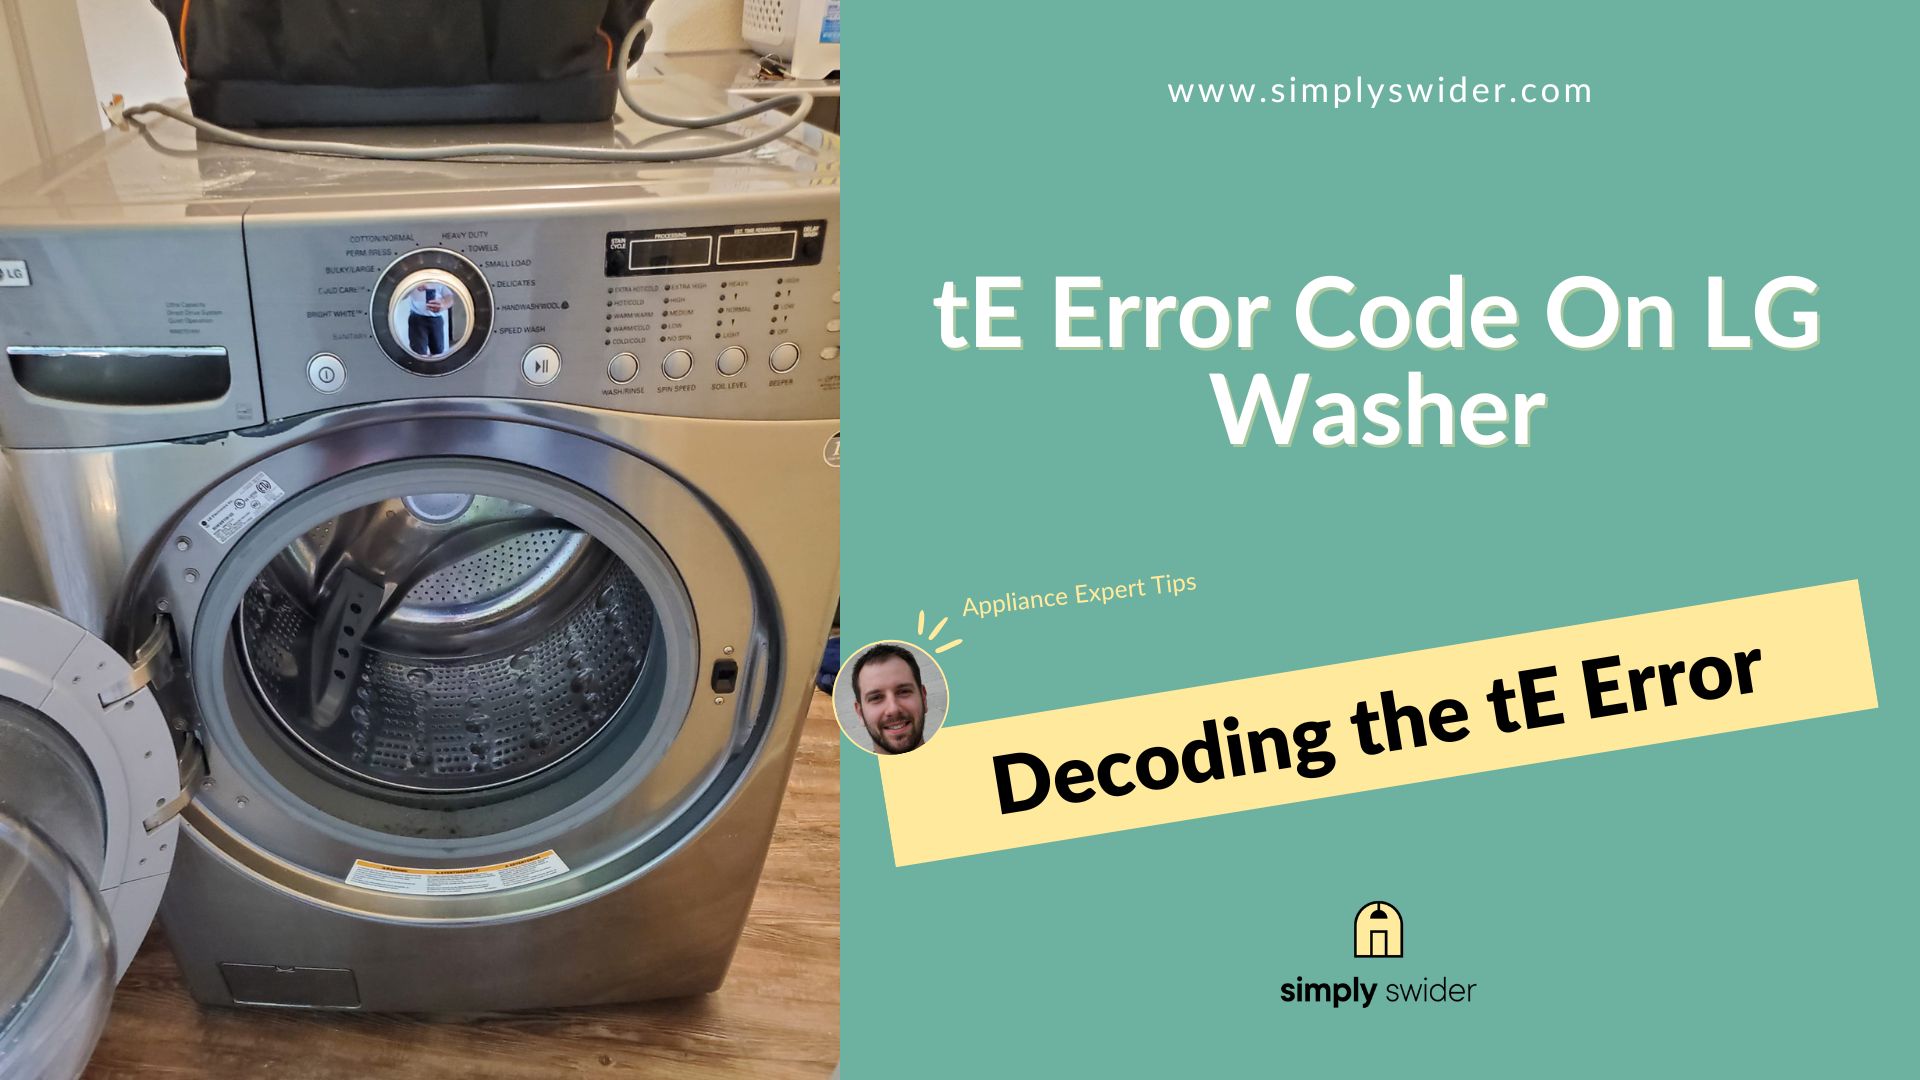 tE Error Code On LG Washer